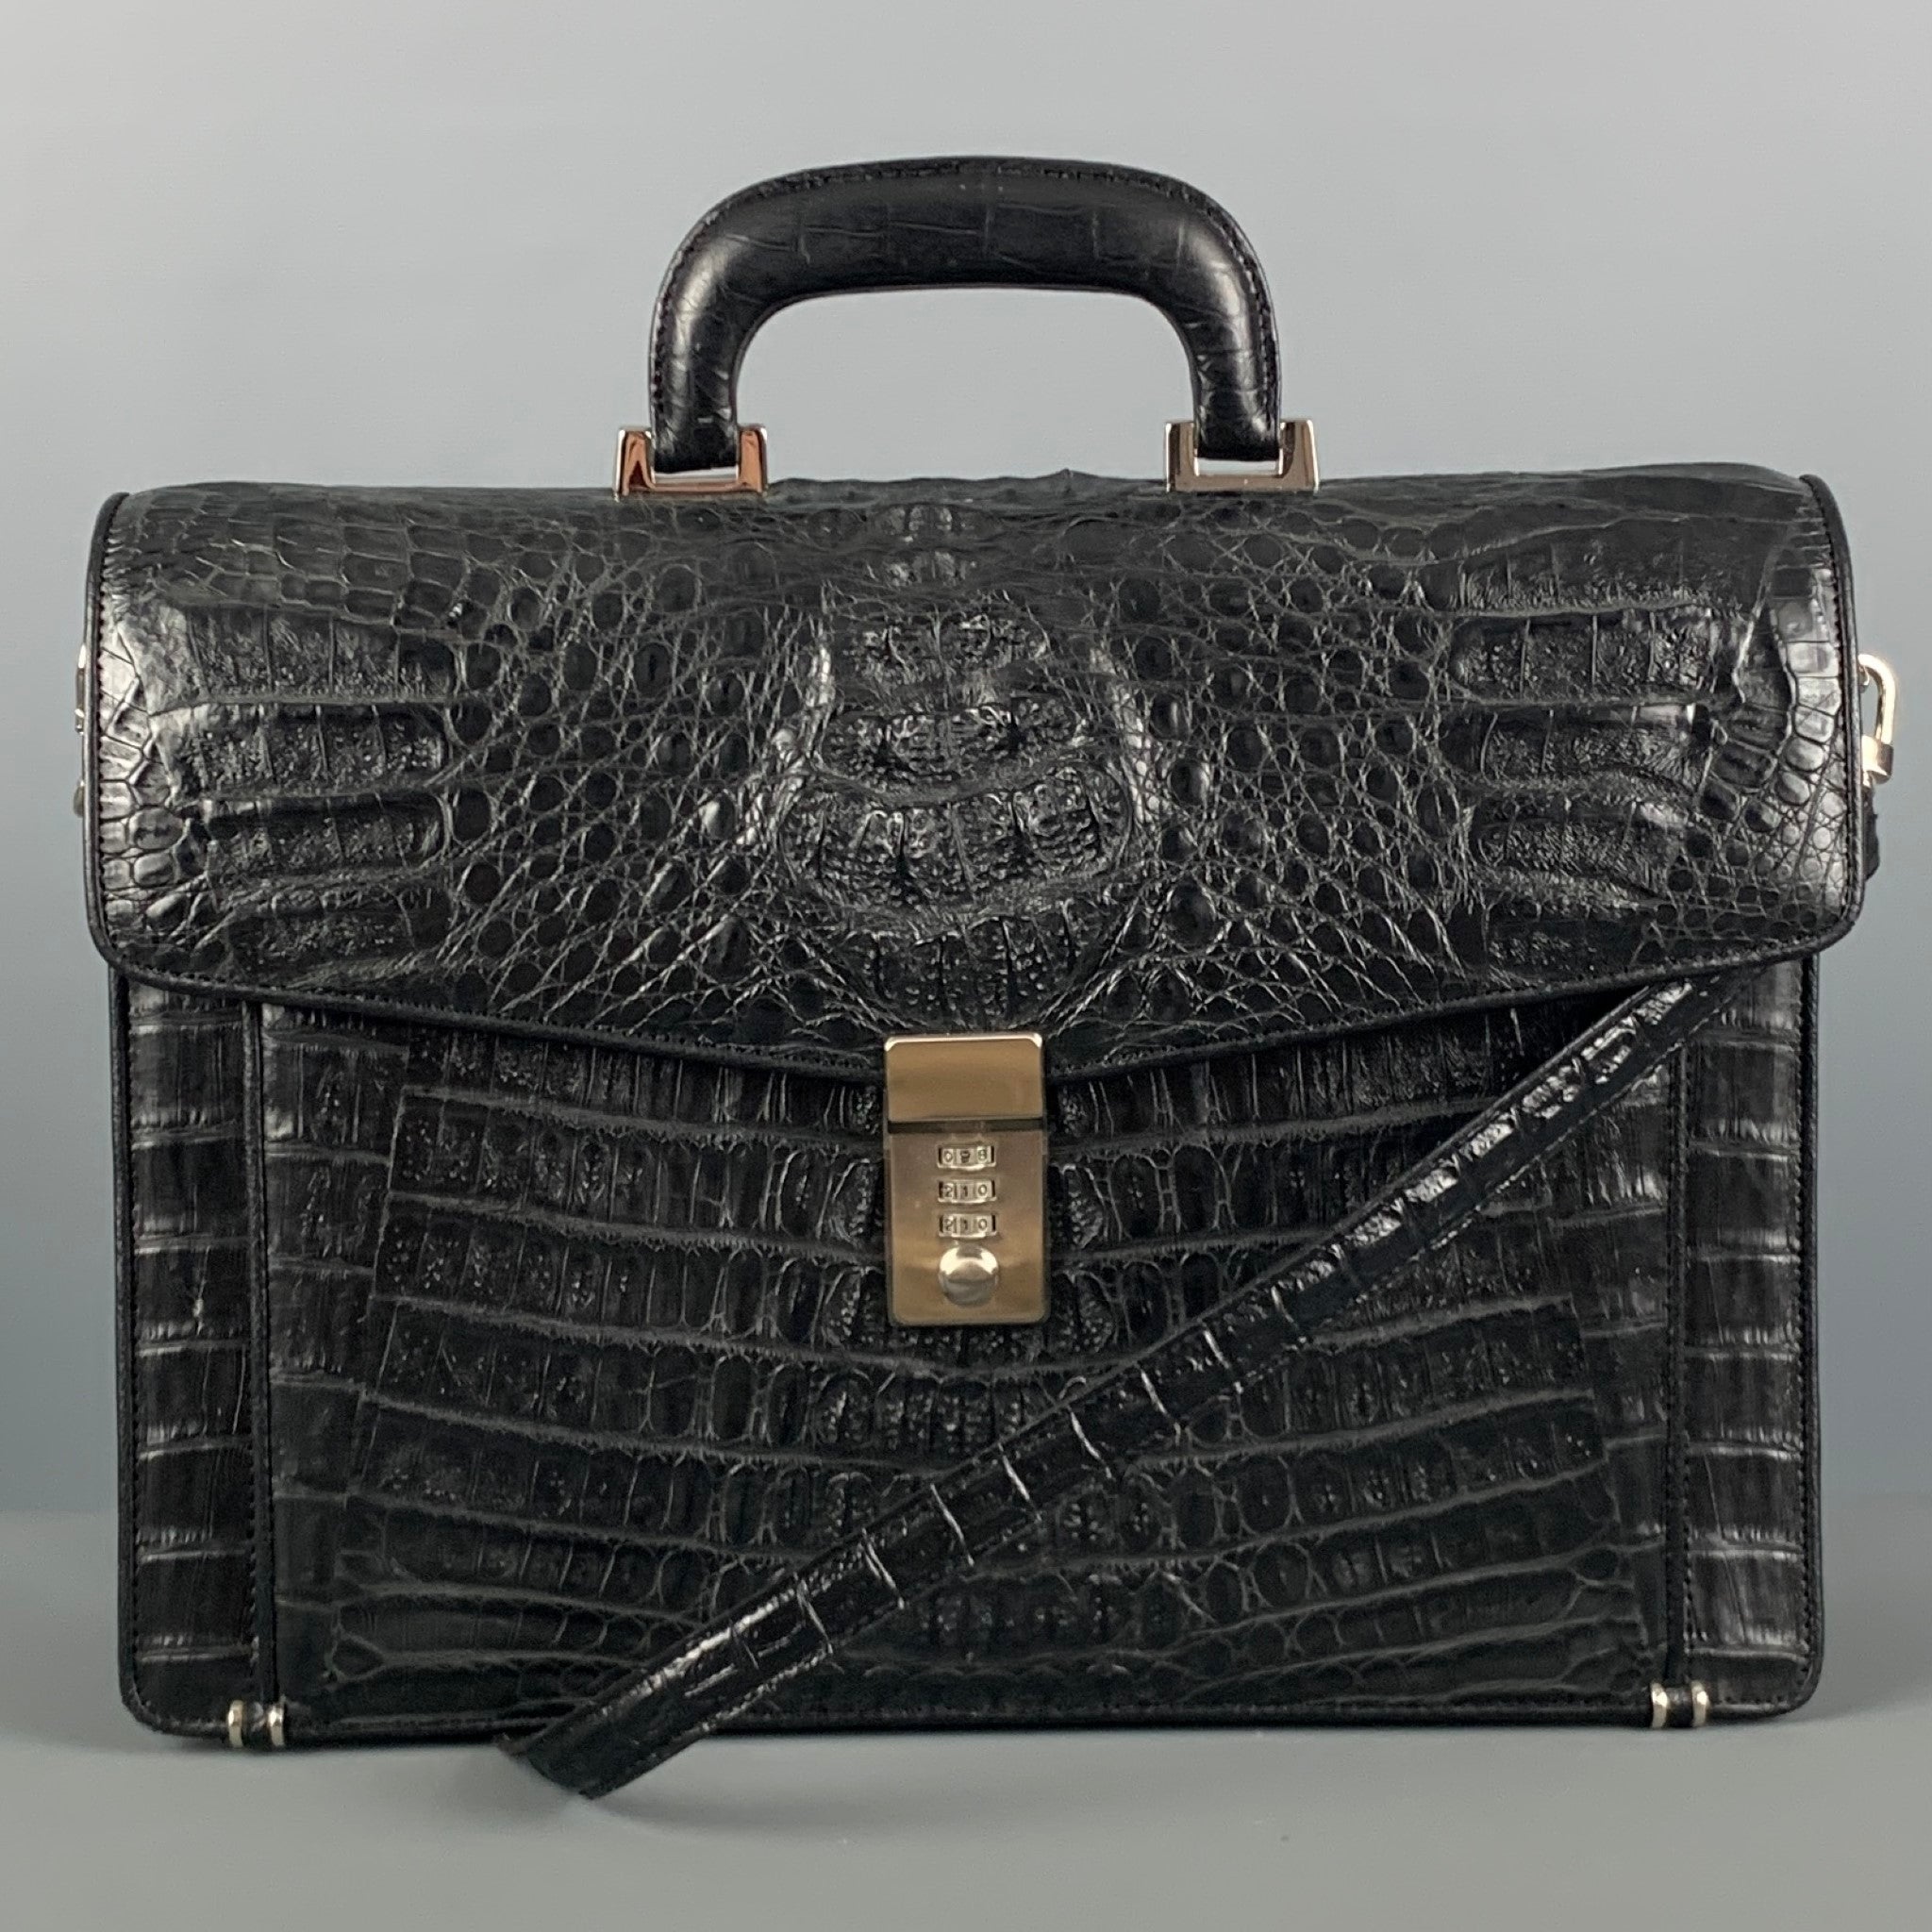 Brucegao - Luxury Alligator Briefcase Laptop Shoulder Handbag Business Bag  for Men https://www.crocodile-bag .com/product/alligator-briefcase-laptop-shoulder-bag-business-bag | Facebook